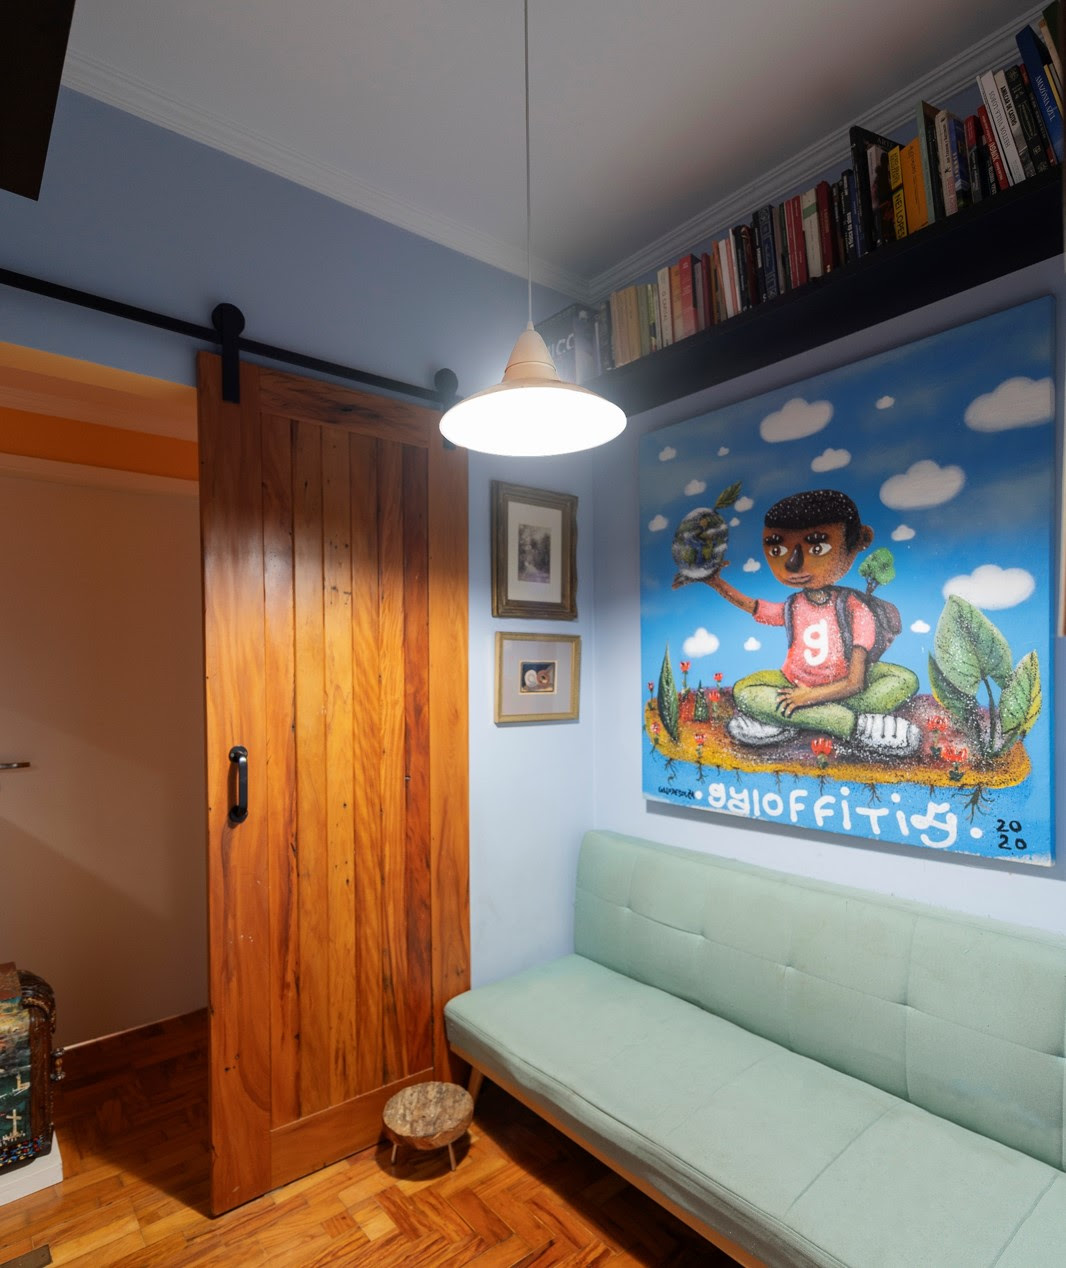 Vida no décor: mais um exemplo da presença de desenhos e cores vibrantes presentes no apartamento / Projeto da arquiteta Michele Wharton com foto de Emerson Rodrigues